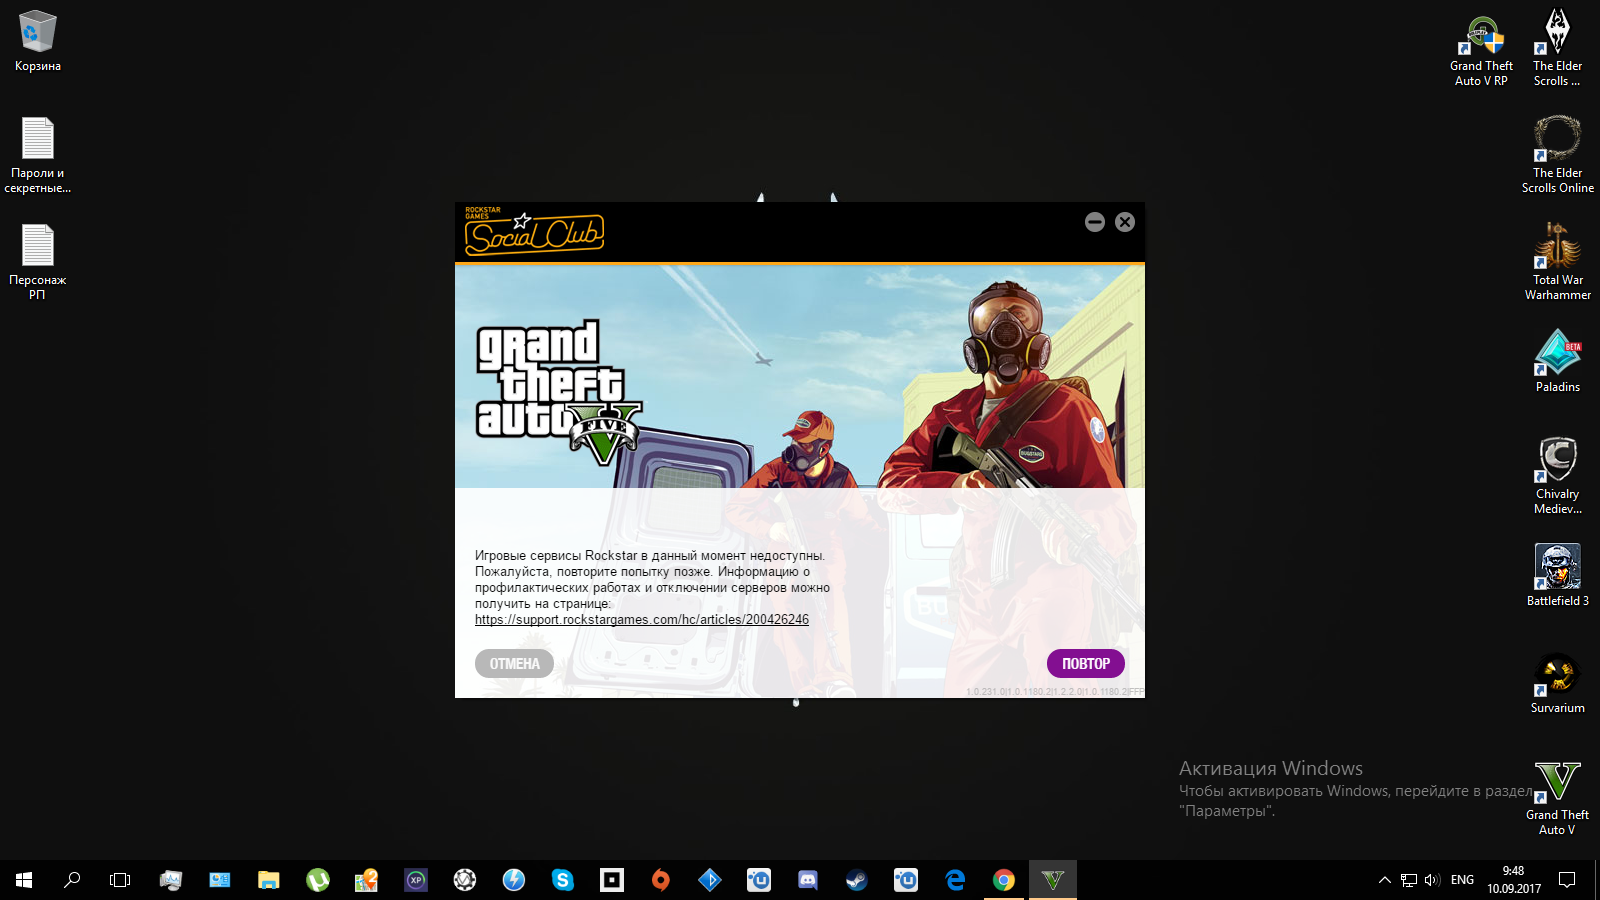 Игровые сервисы Rockstar сейчас недоступны GTA 5. Не запускается ГТА 5 через лаунчер рокстар. Epic games код 134